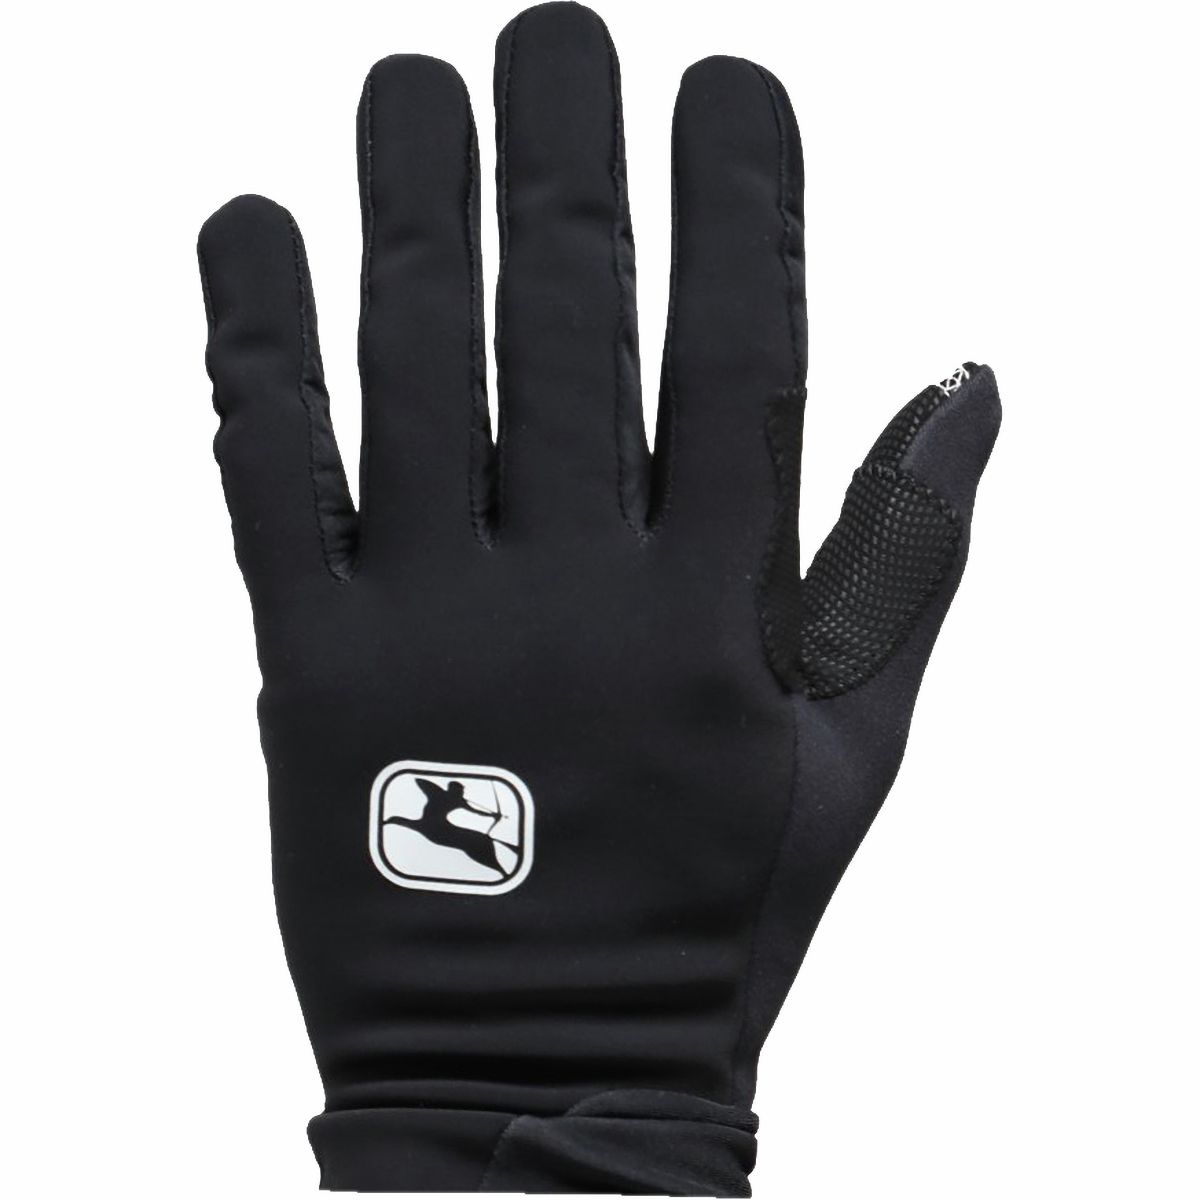 Giordana AV 200 Winter Glove Men's